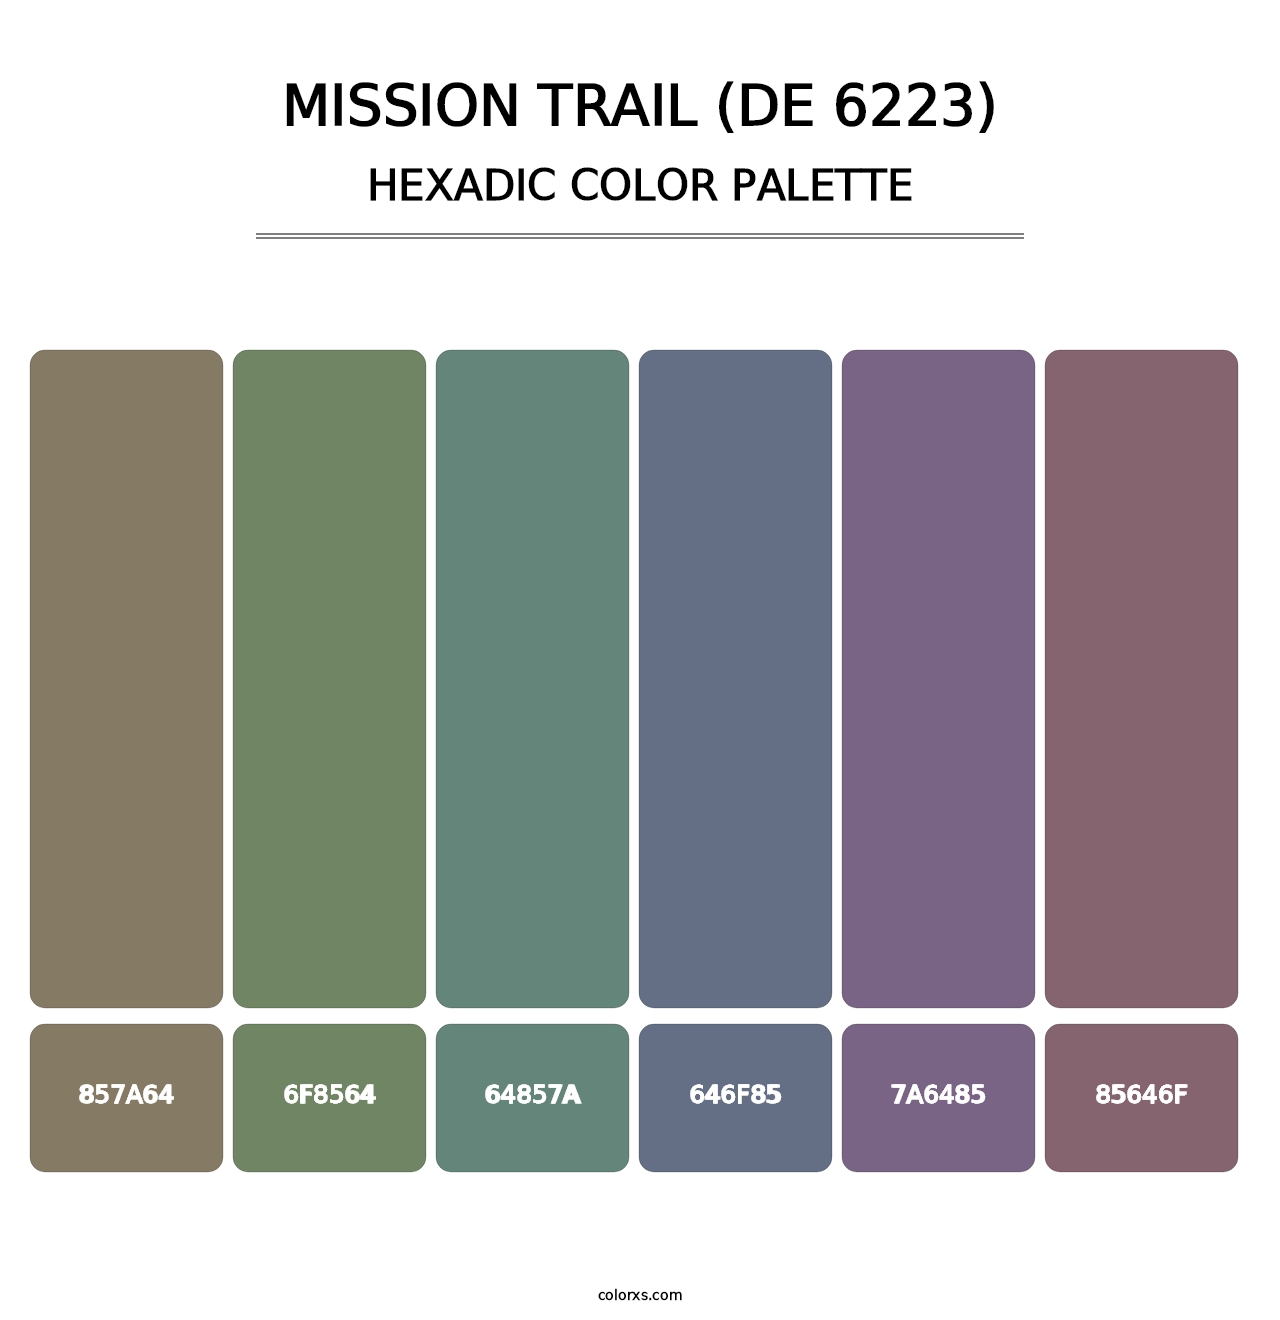 Mission Trail (DE 6223) - Hexadic Color Palette